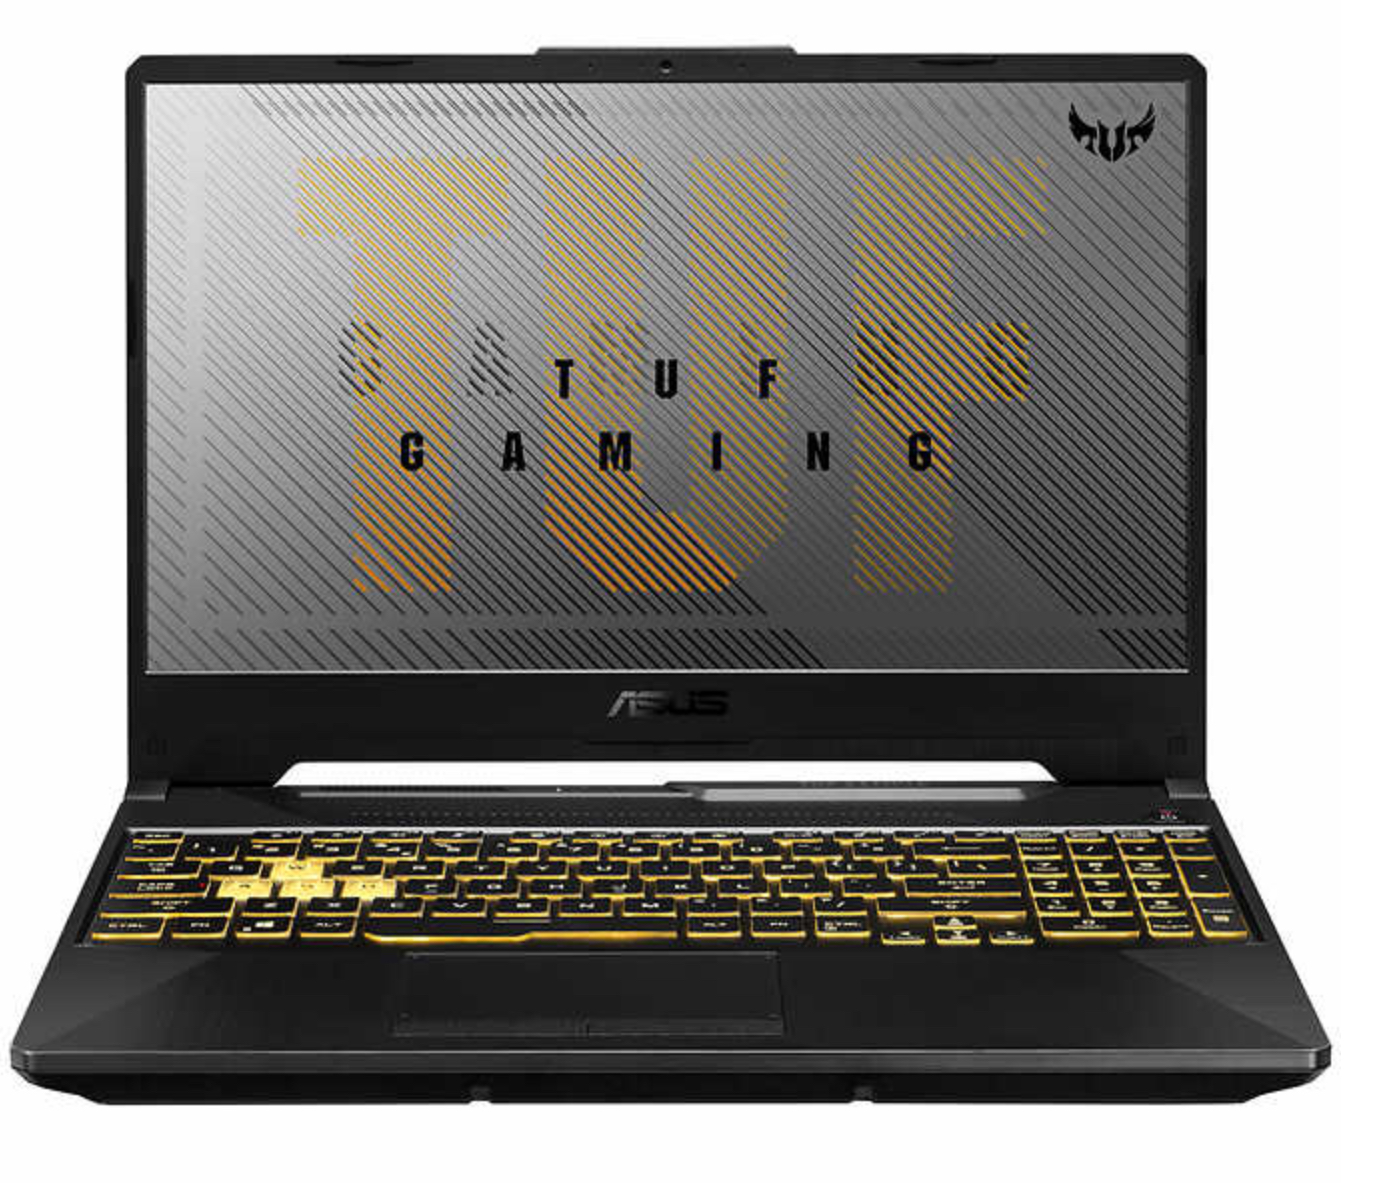 ASUS TUF Gaming A15 Laptop - AMD Ryzen 7-4800H (8 core 16 Threads) - GeForce GTX 1650 Ti -512 GB - 8GB Ram -144Hz- RGB keyboard $799.99